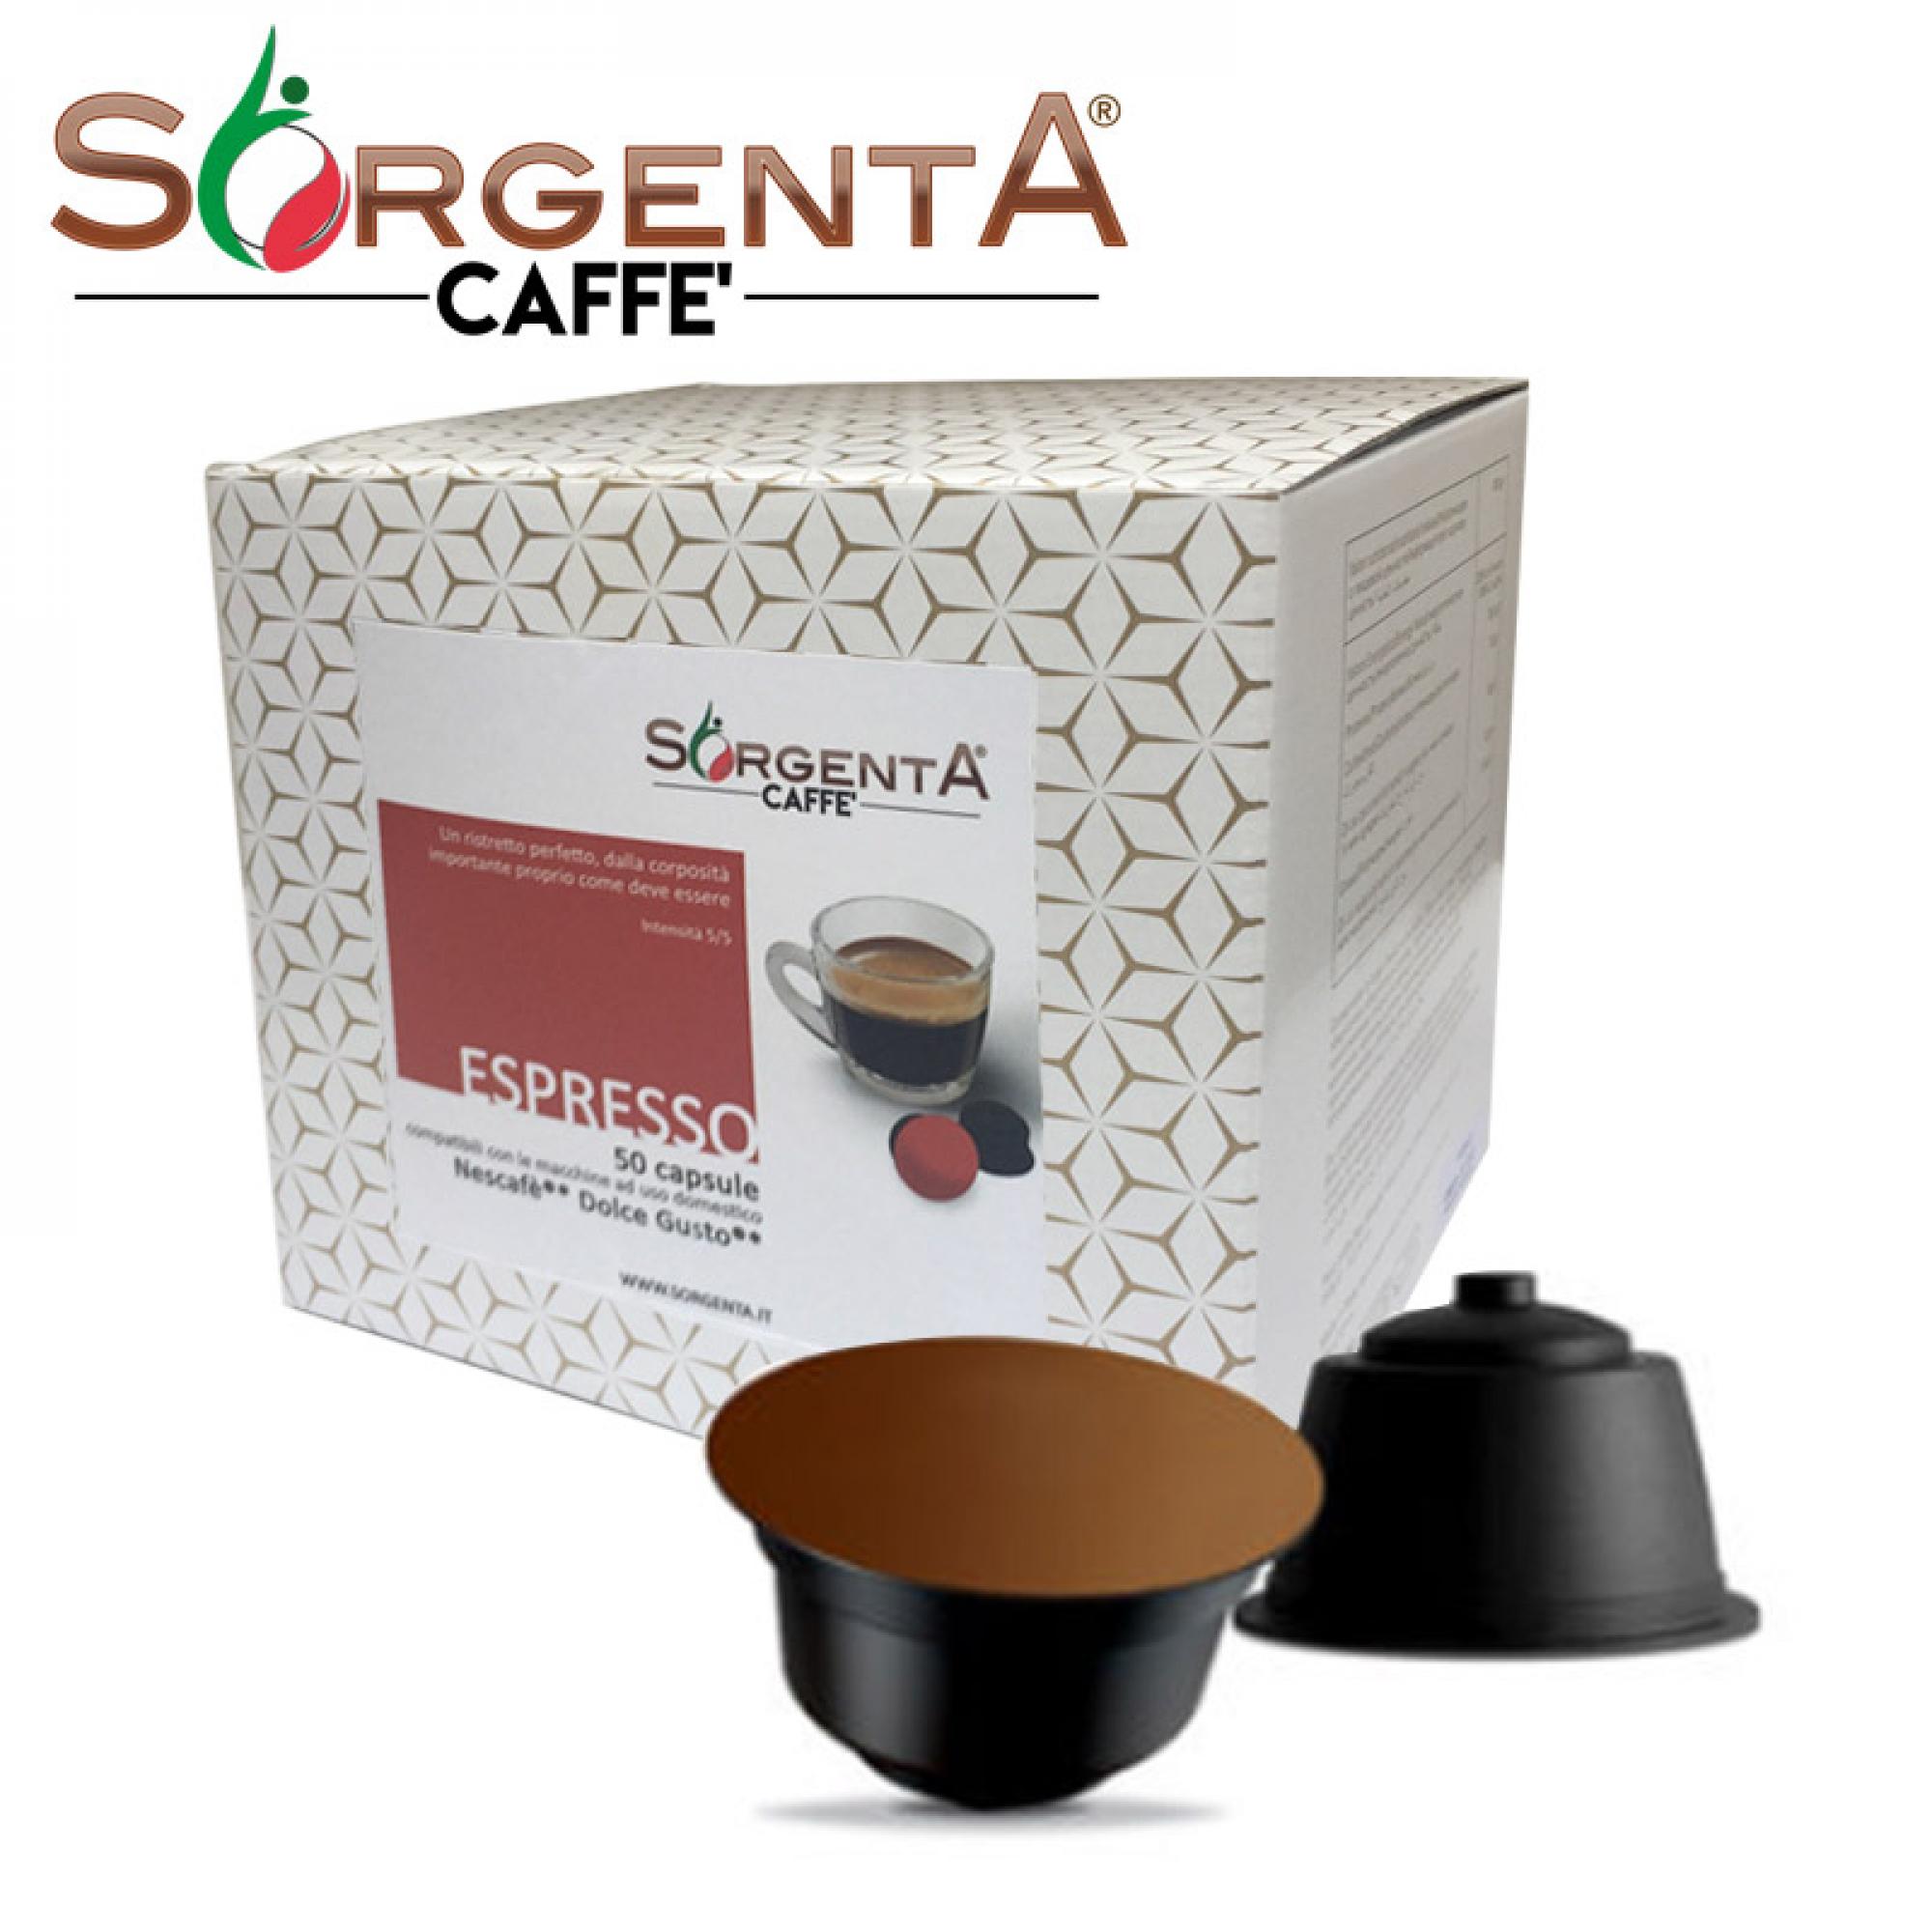 Sorgenta Caffè ESPRESSO 50 capsule compatibili Dolce Gusto